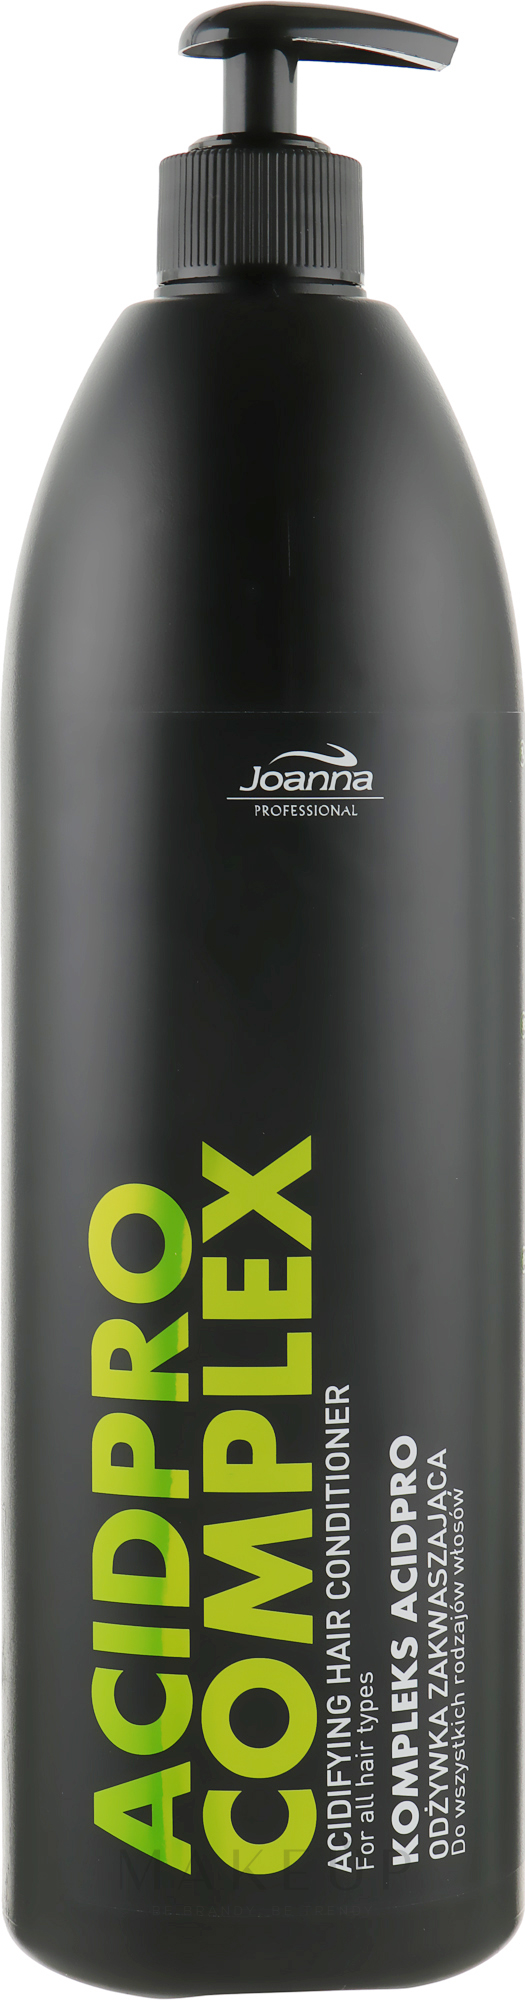 PH-ausgleichende Haarspülung mit Säurekomplex - Joanna Professional Acidifying Conditioner — Bild 1000 g